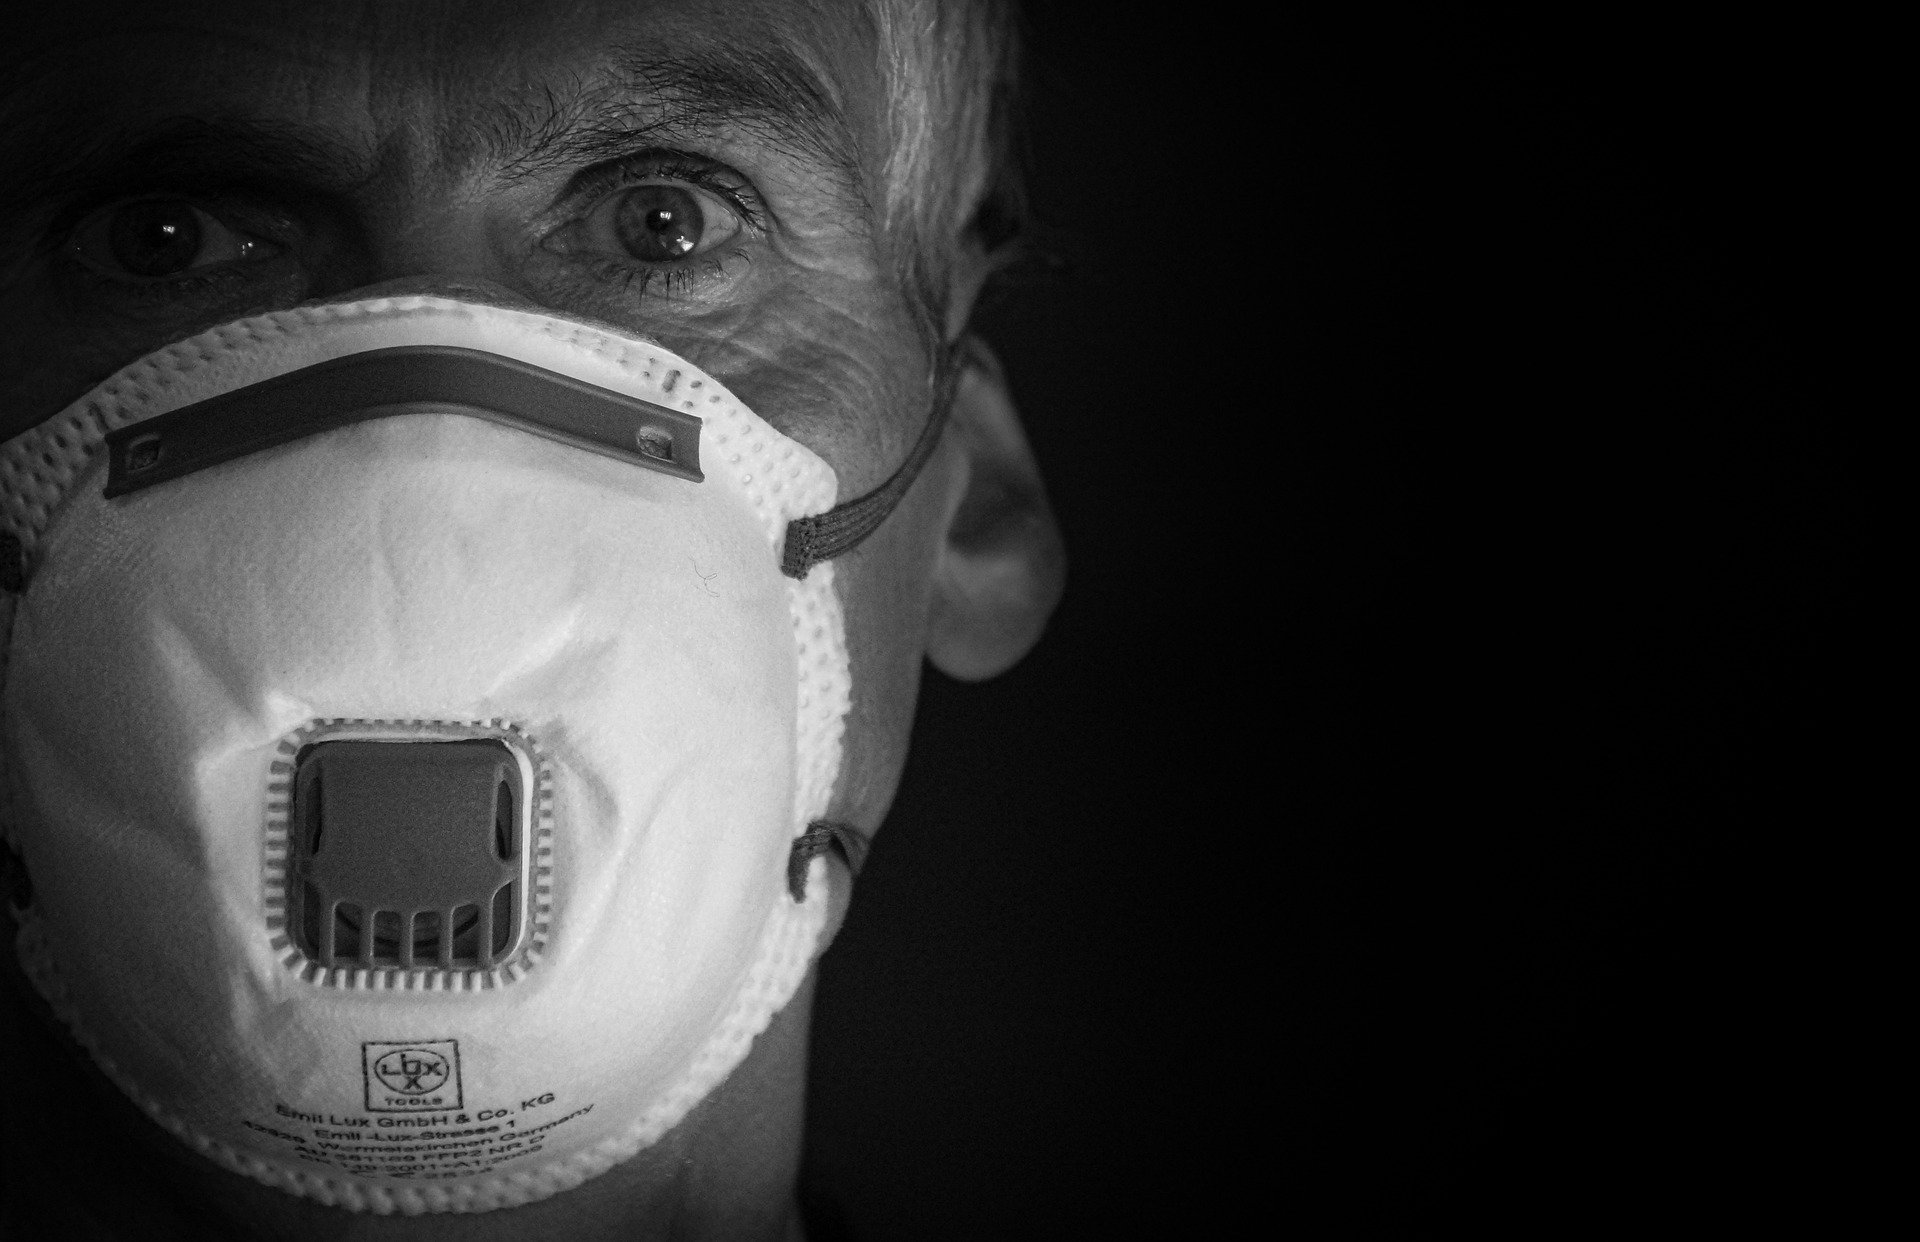 Fotografía a blanco y negro de la cara de un hombre usando una mascarilla de respiración con filtro.